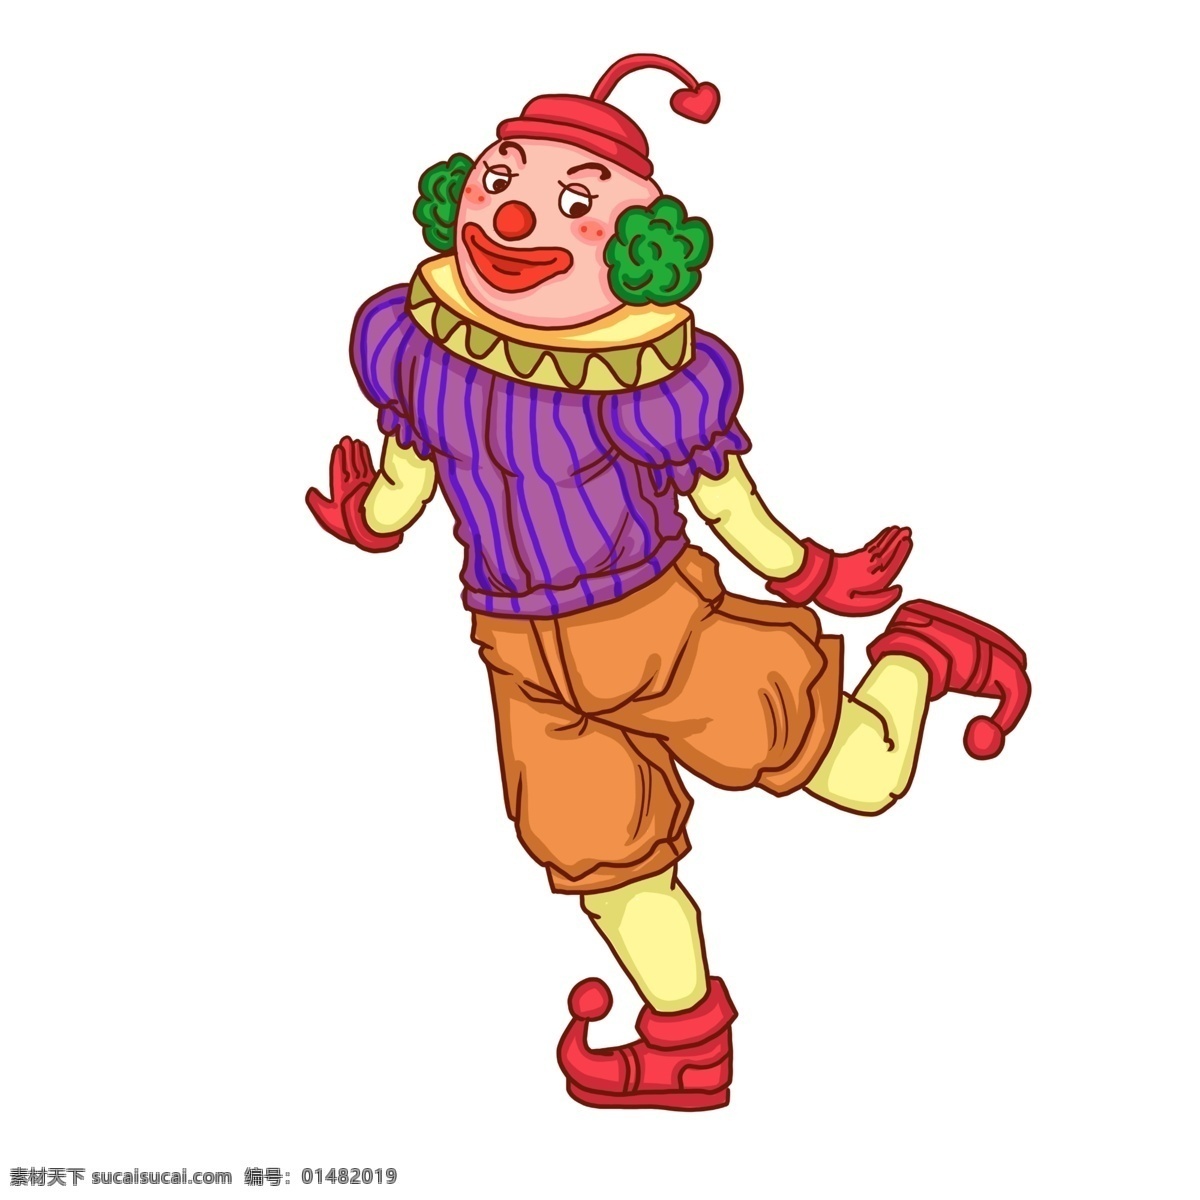 小丑 愚人节 快乐 卡通 人物 愚人节道具 男小丑 卡通人物 快乐小丑 黄色 红色 绿色 愚人节快乐